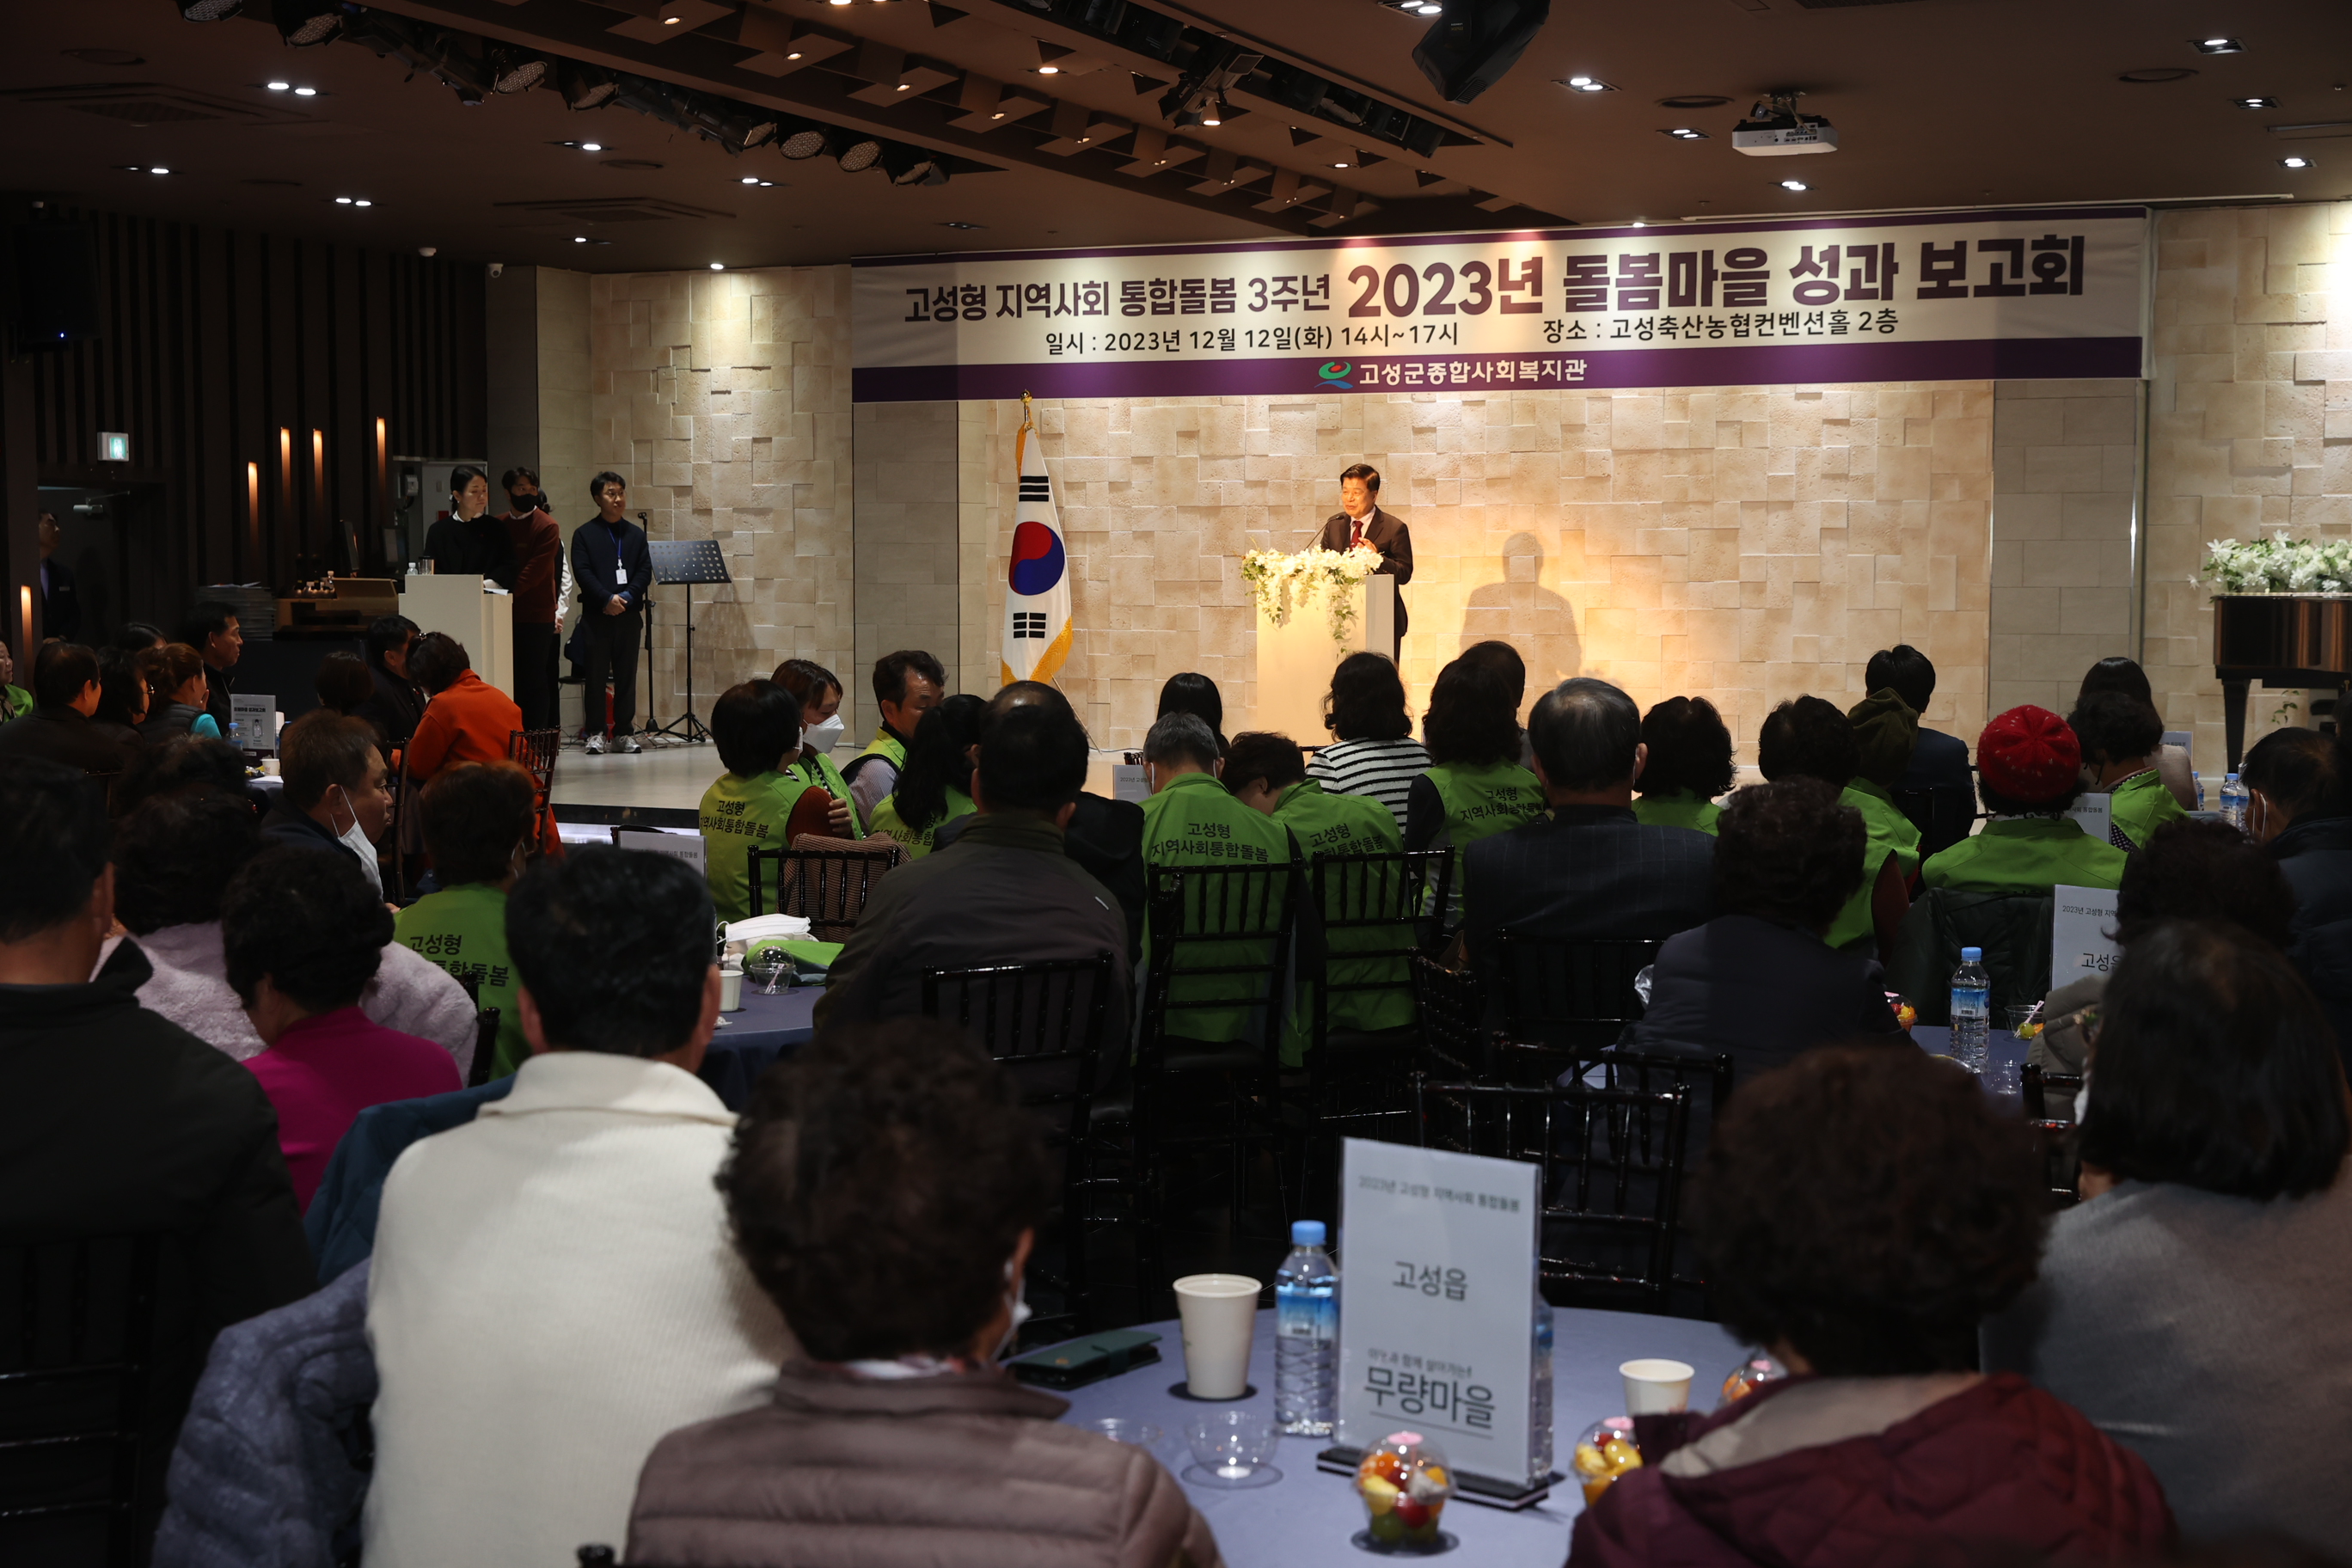 12월12일 2023년 돌봄마을 성과보고회 관련자료